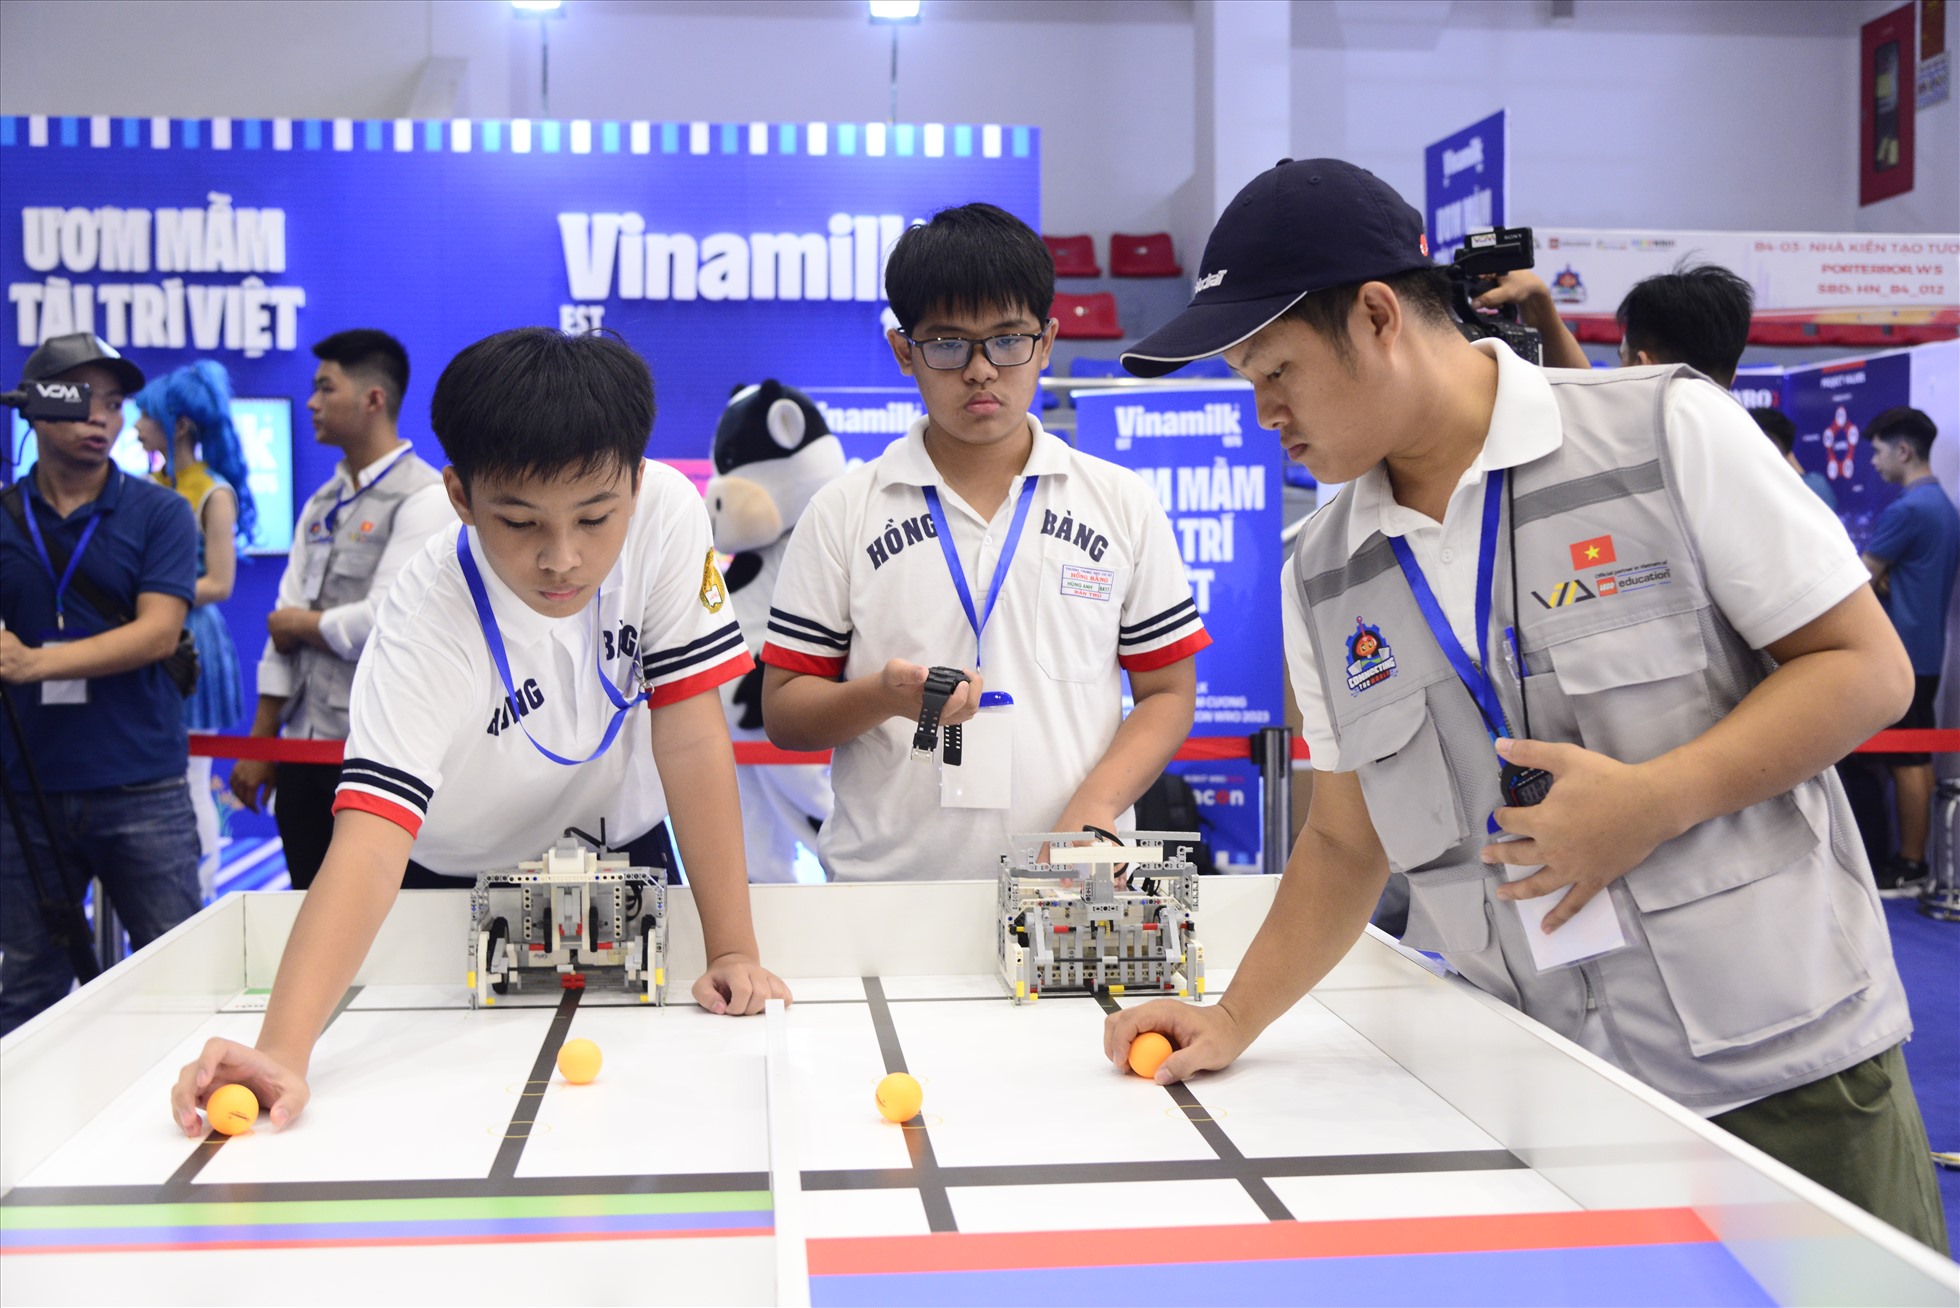 Nhà vô địch Quang Minh và Hùng Anh thể hiện xuất sắc ở bảng B5. Ảnh: Vinamilk